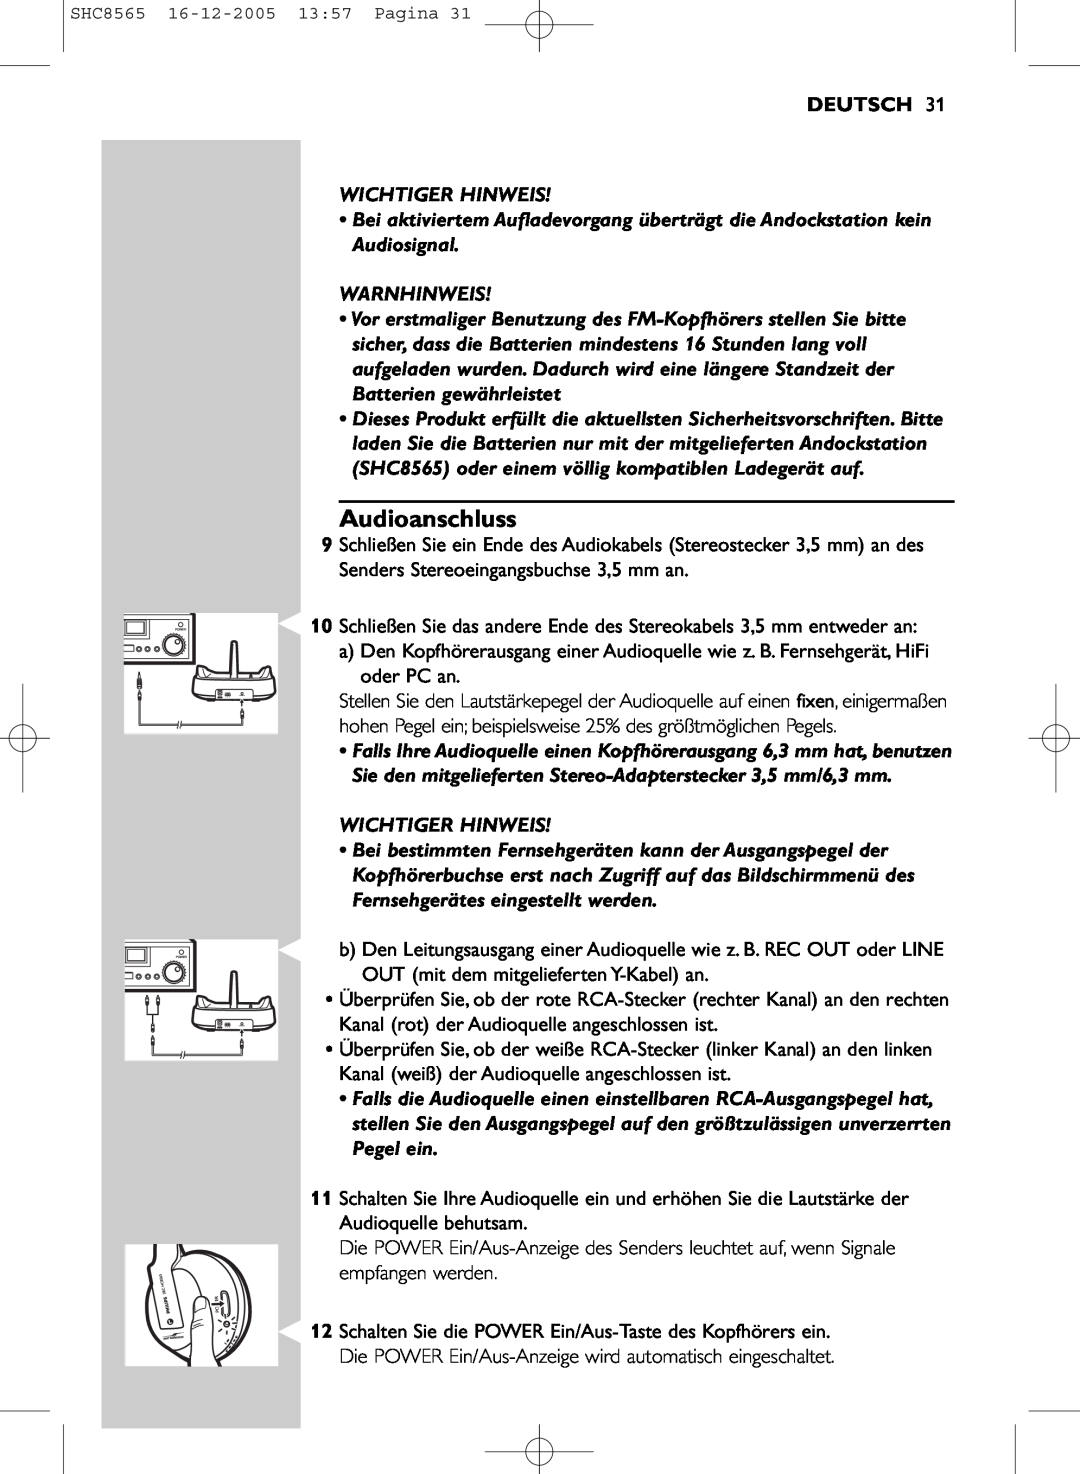 Philips SHC8565 manual Audioanschluss, Deutsch, Wichtiger Hinweis, Warnhinweis 